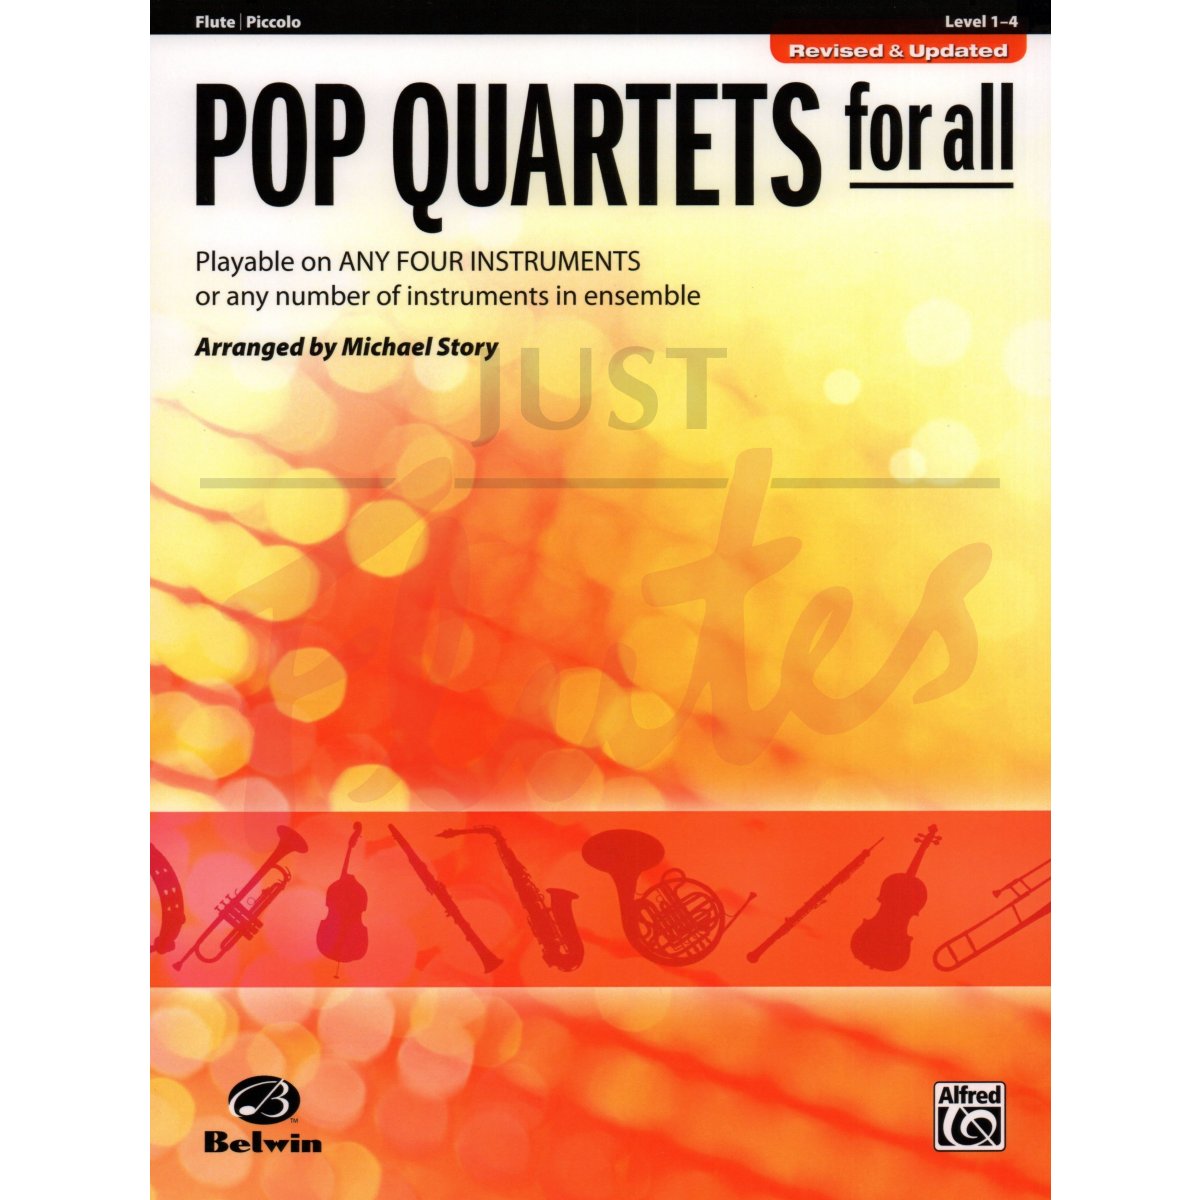 Pop Quartets for All for Four Flutes